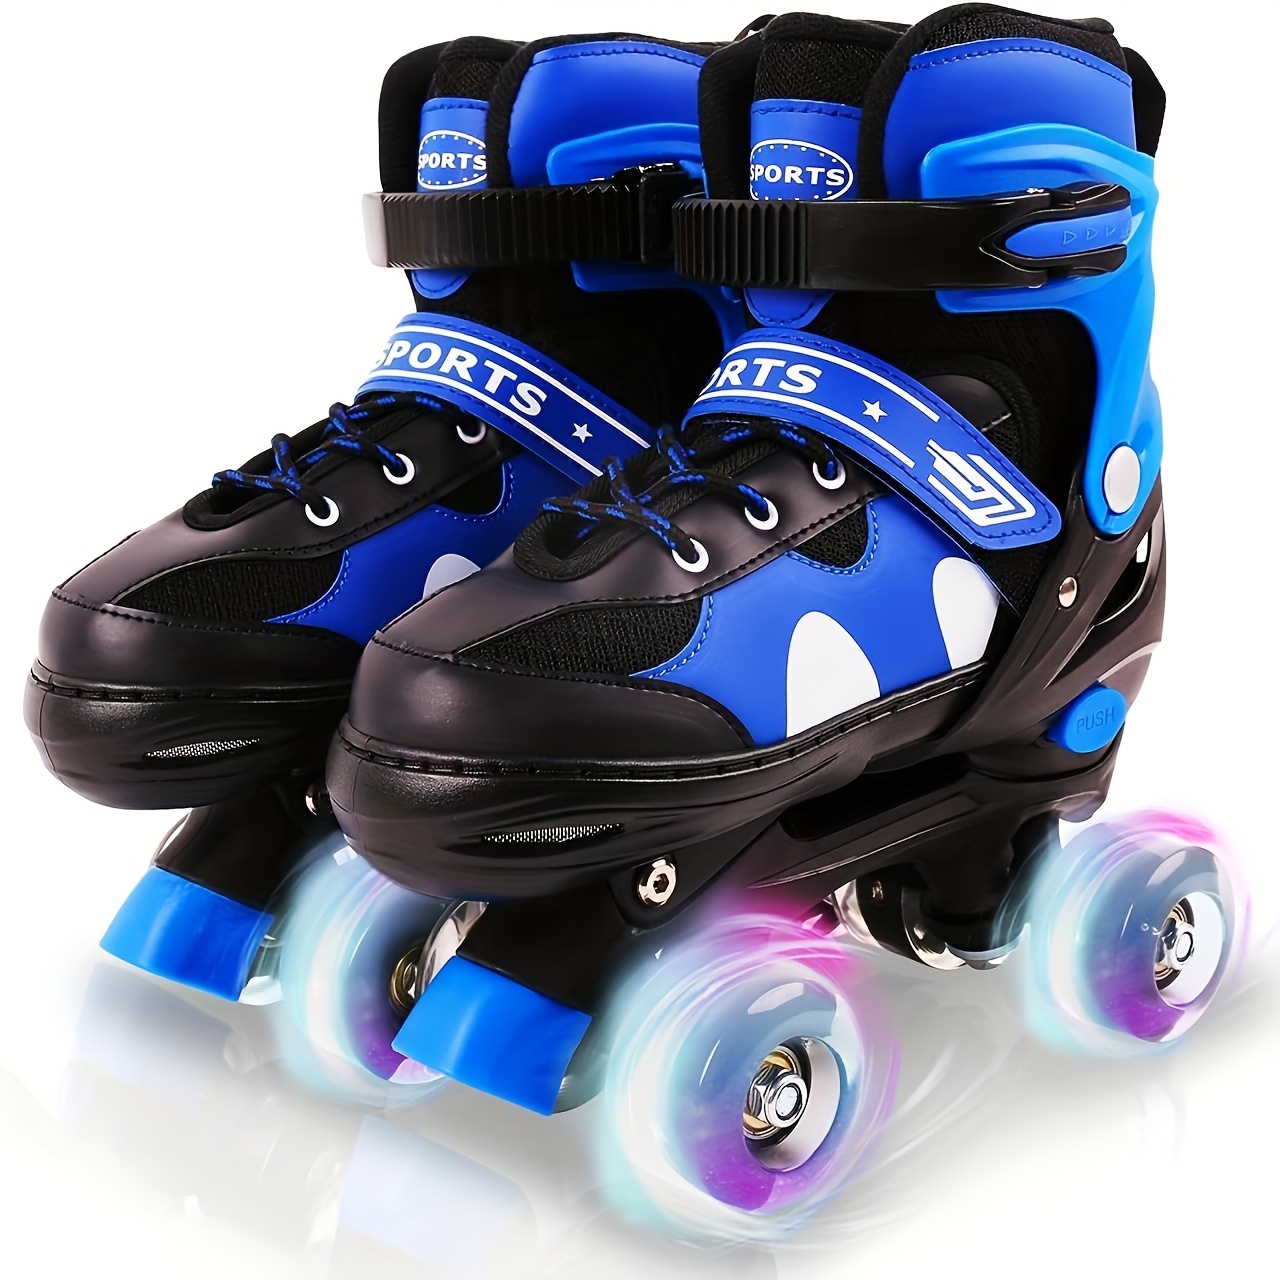 Patines de ruedas para niñas y niños, patines ajustables con 4 ruedas  iluminadas, protección total, ideal para diversión al aire libre.